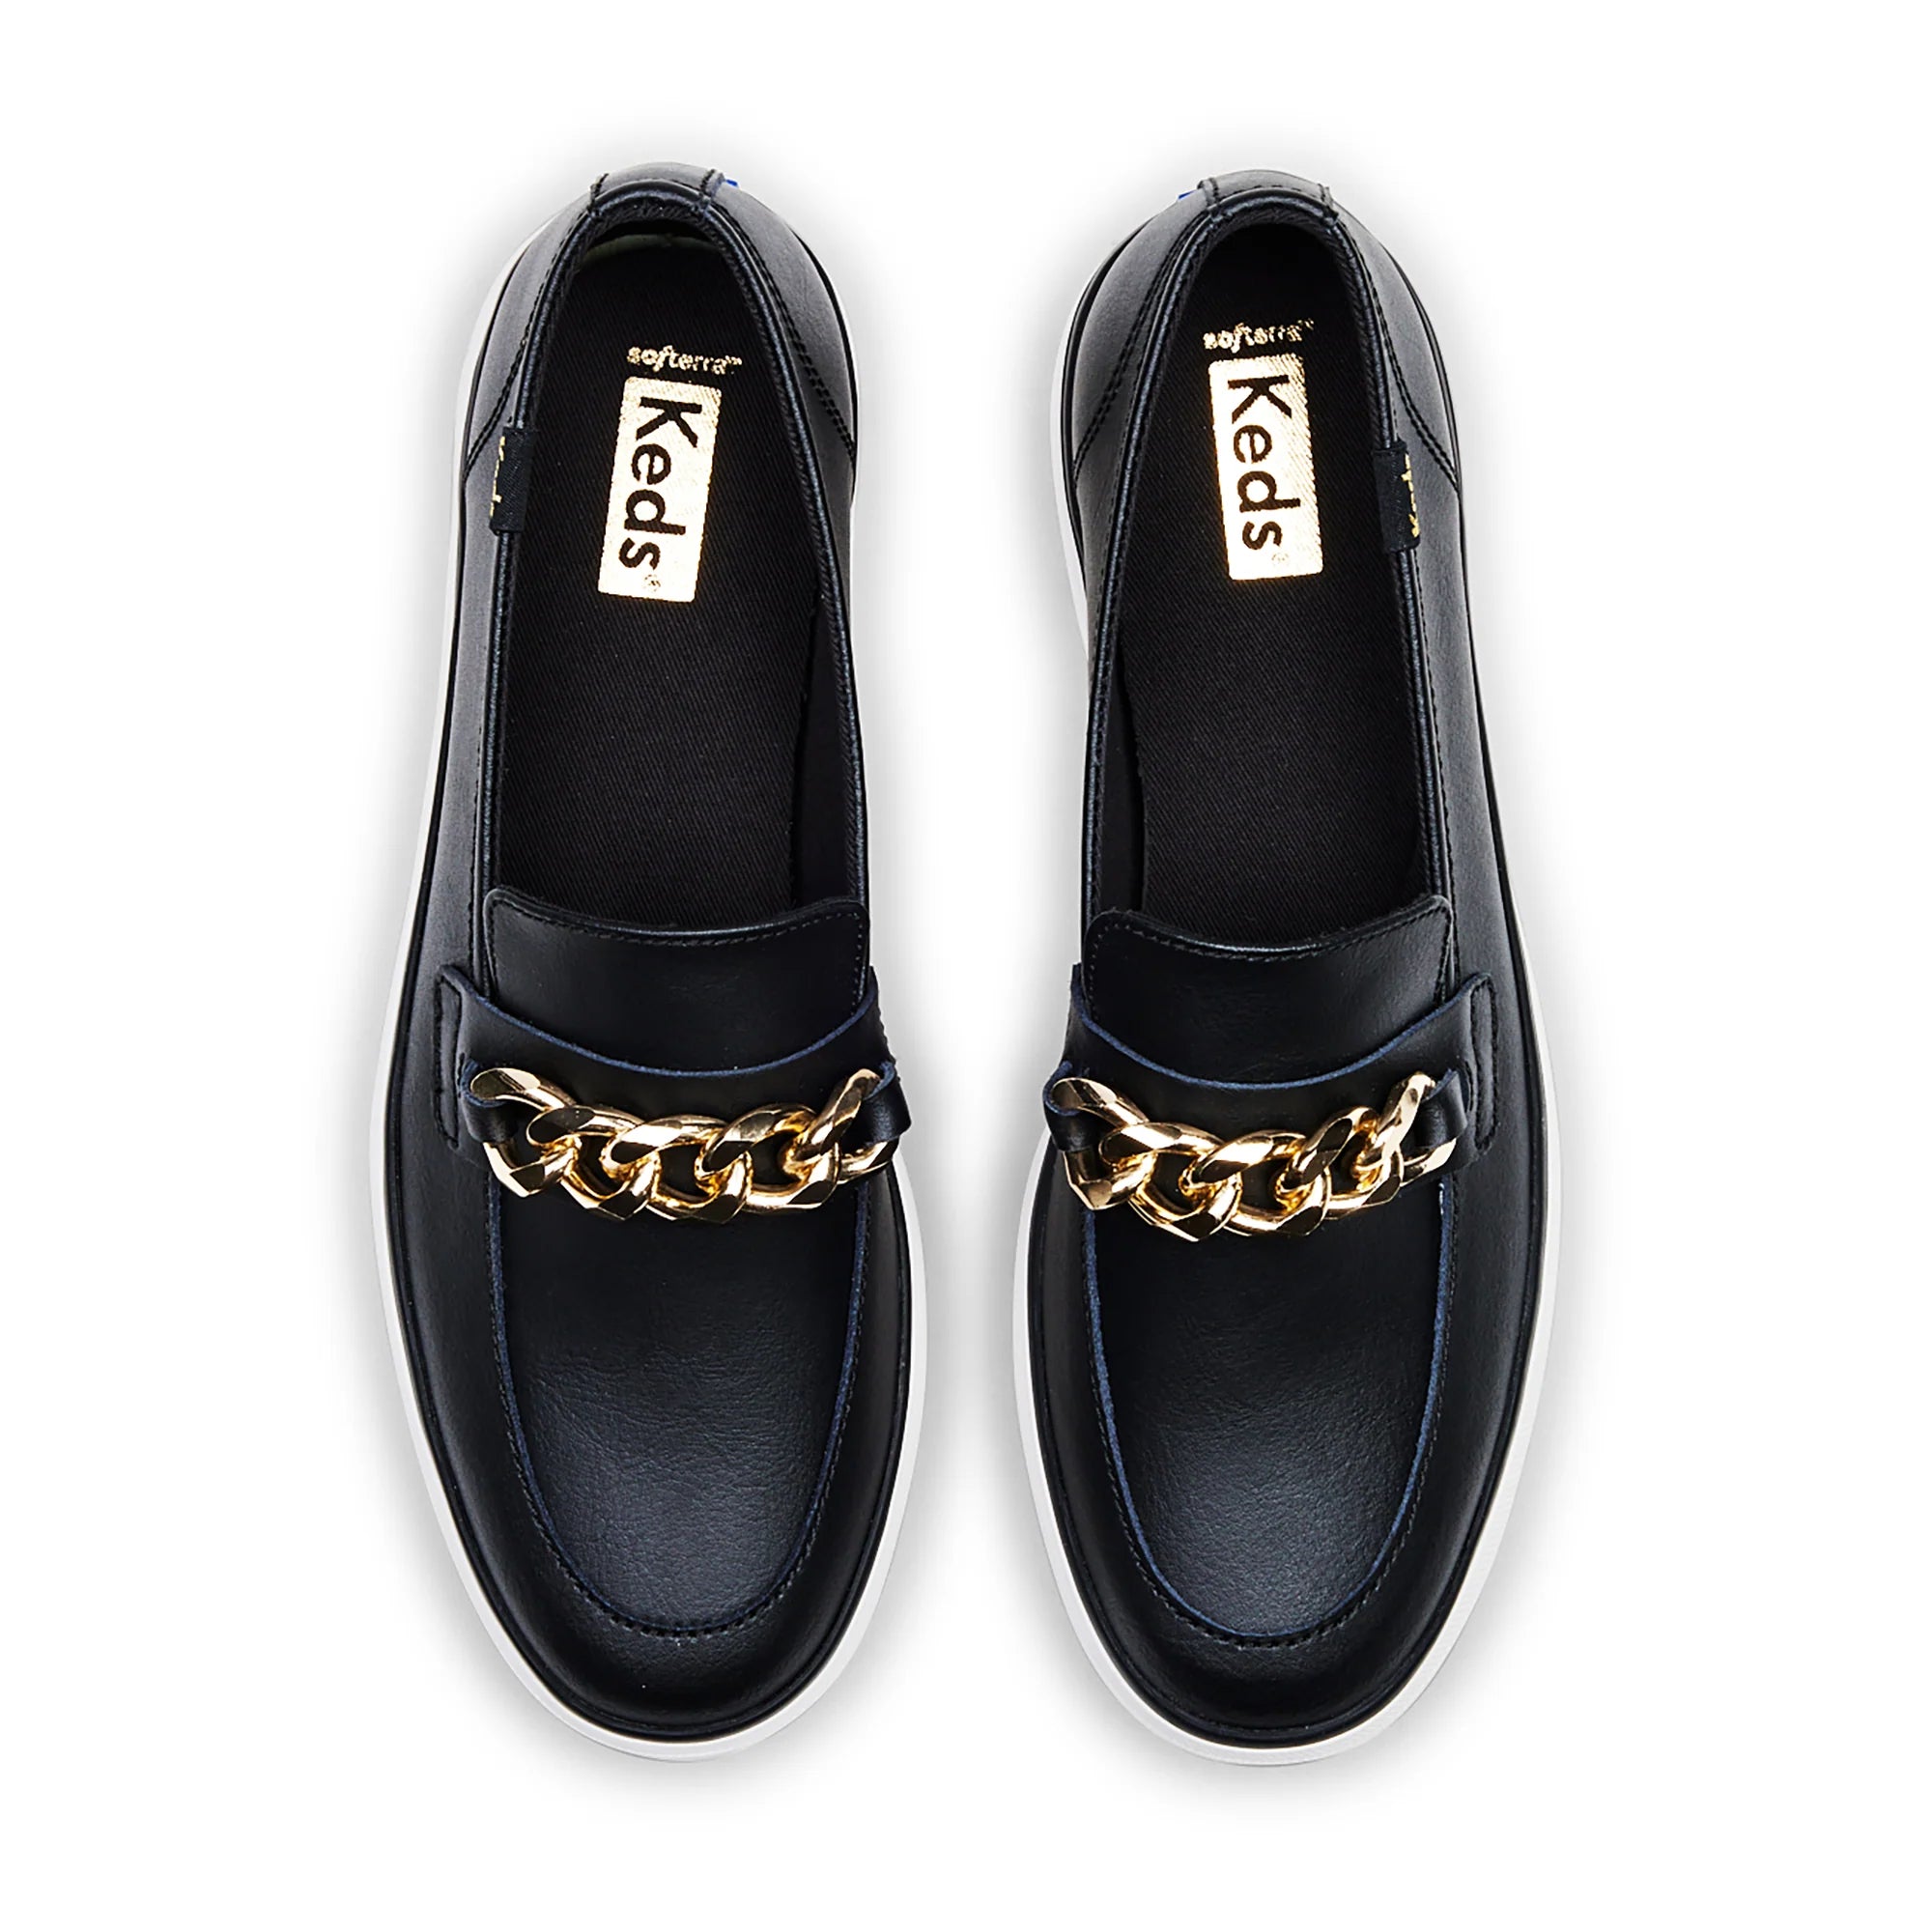 KEDS - Triple Decker Loafer - Leather - Black/Gold